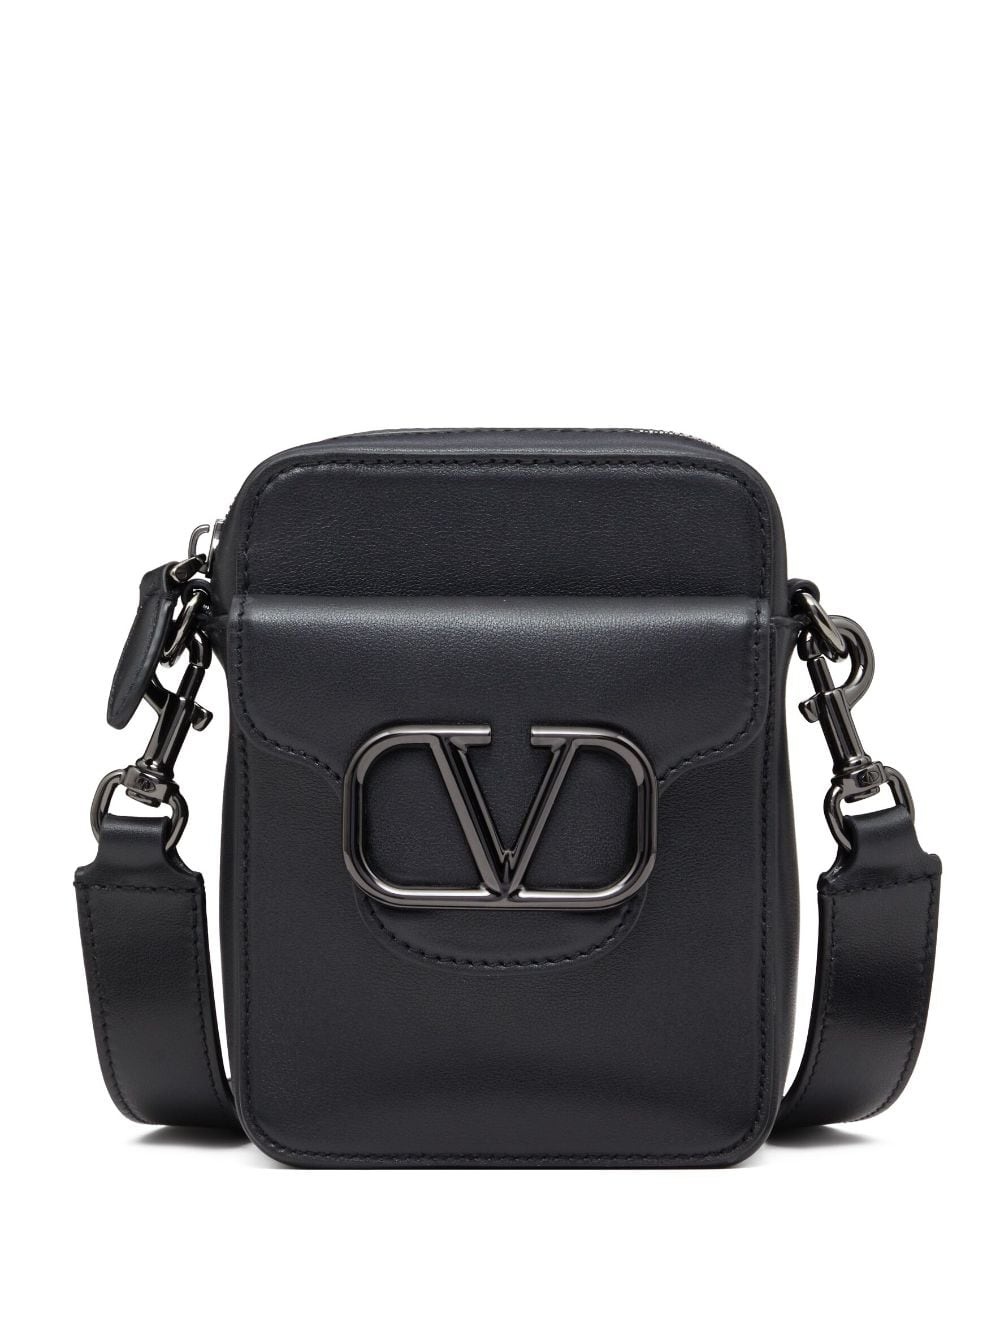 VLogo leather shoulder bag - 1